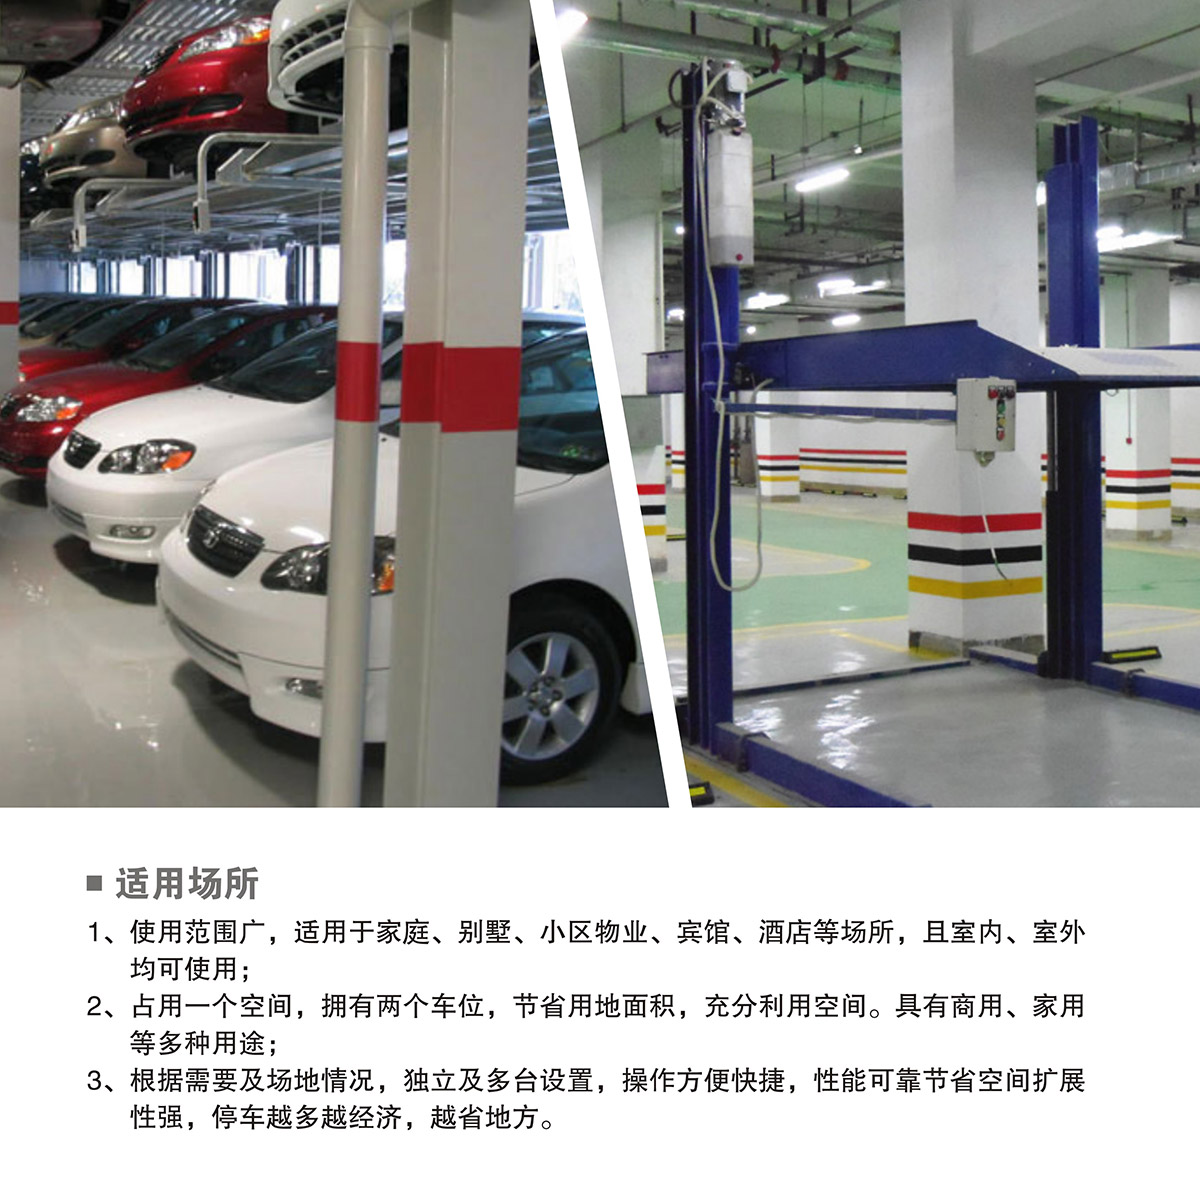 云南PJS两柱简易升降立体停车场库设备适用场所.jpg